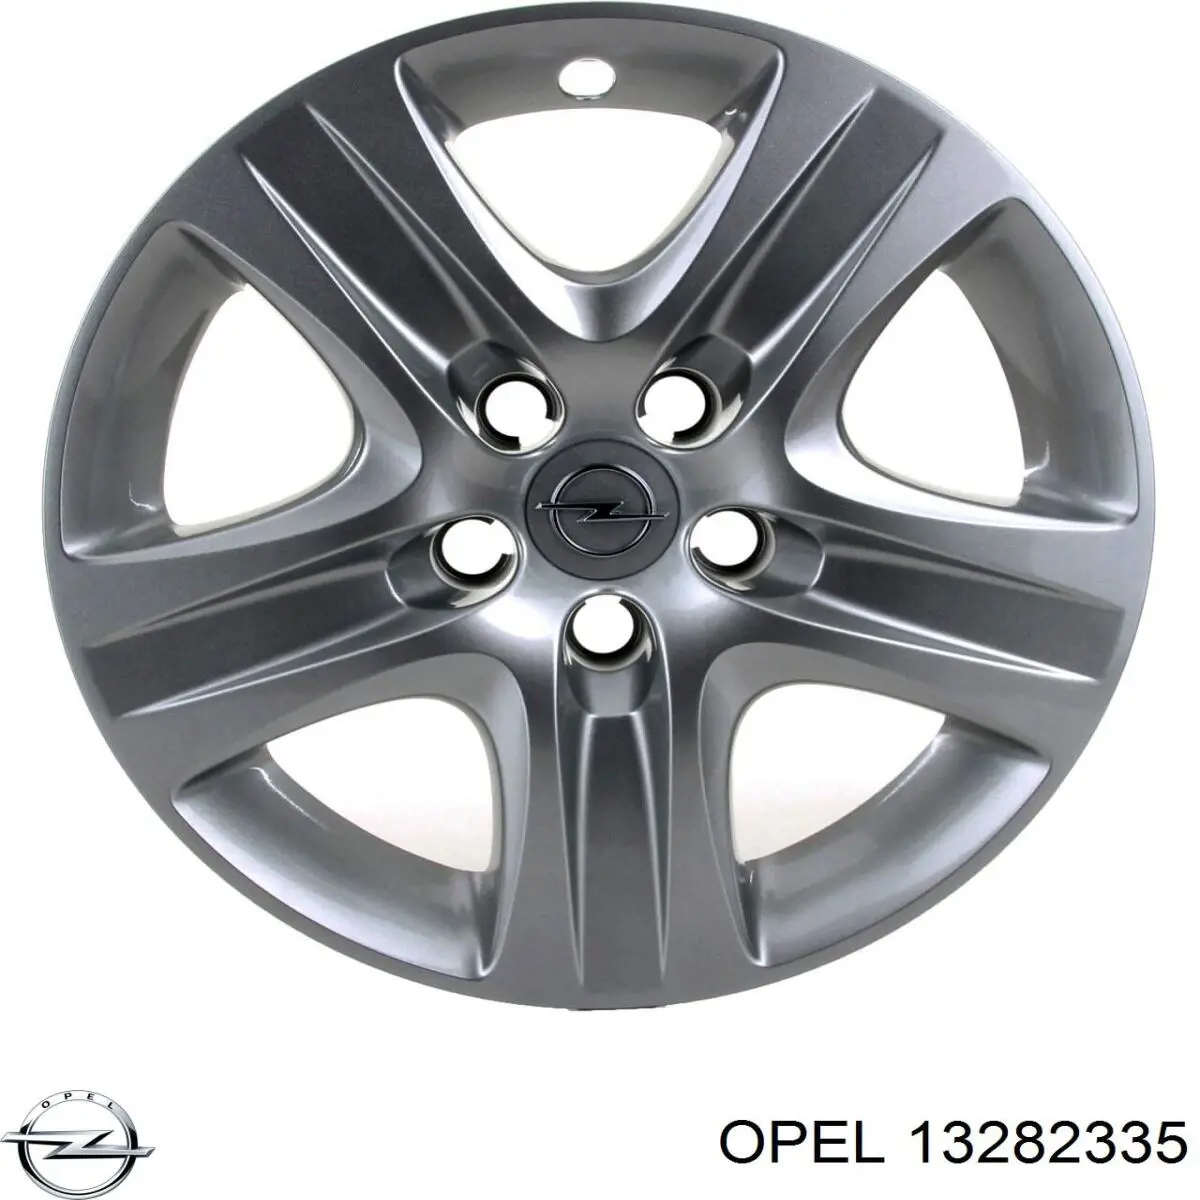 13282335 Opel колпак колесного диска